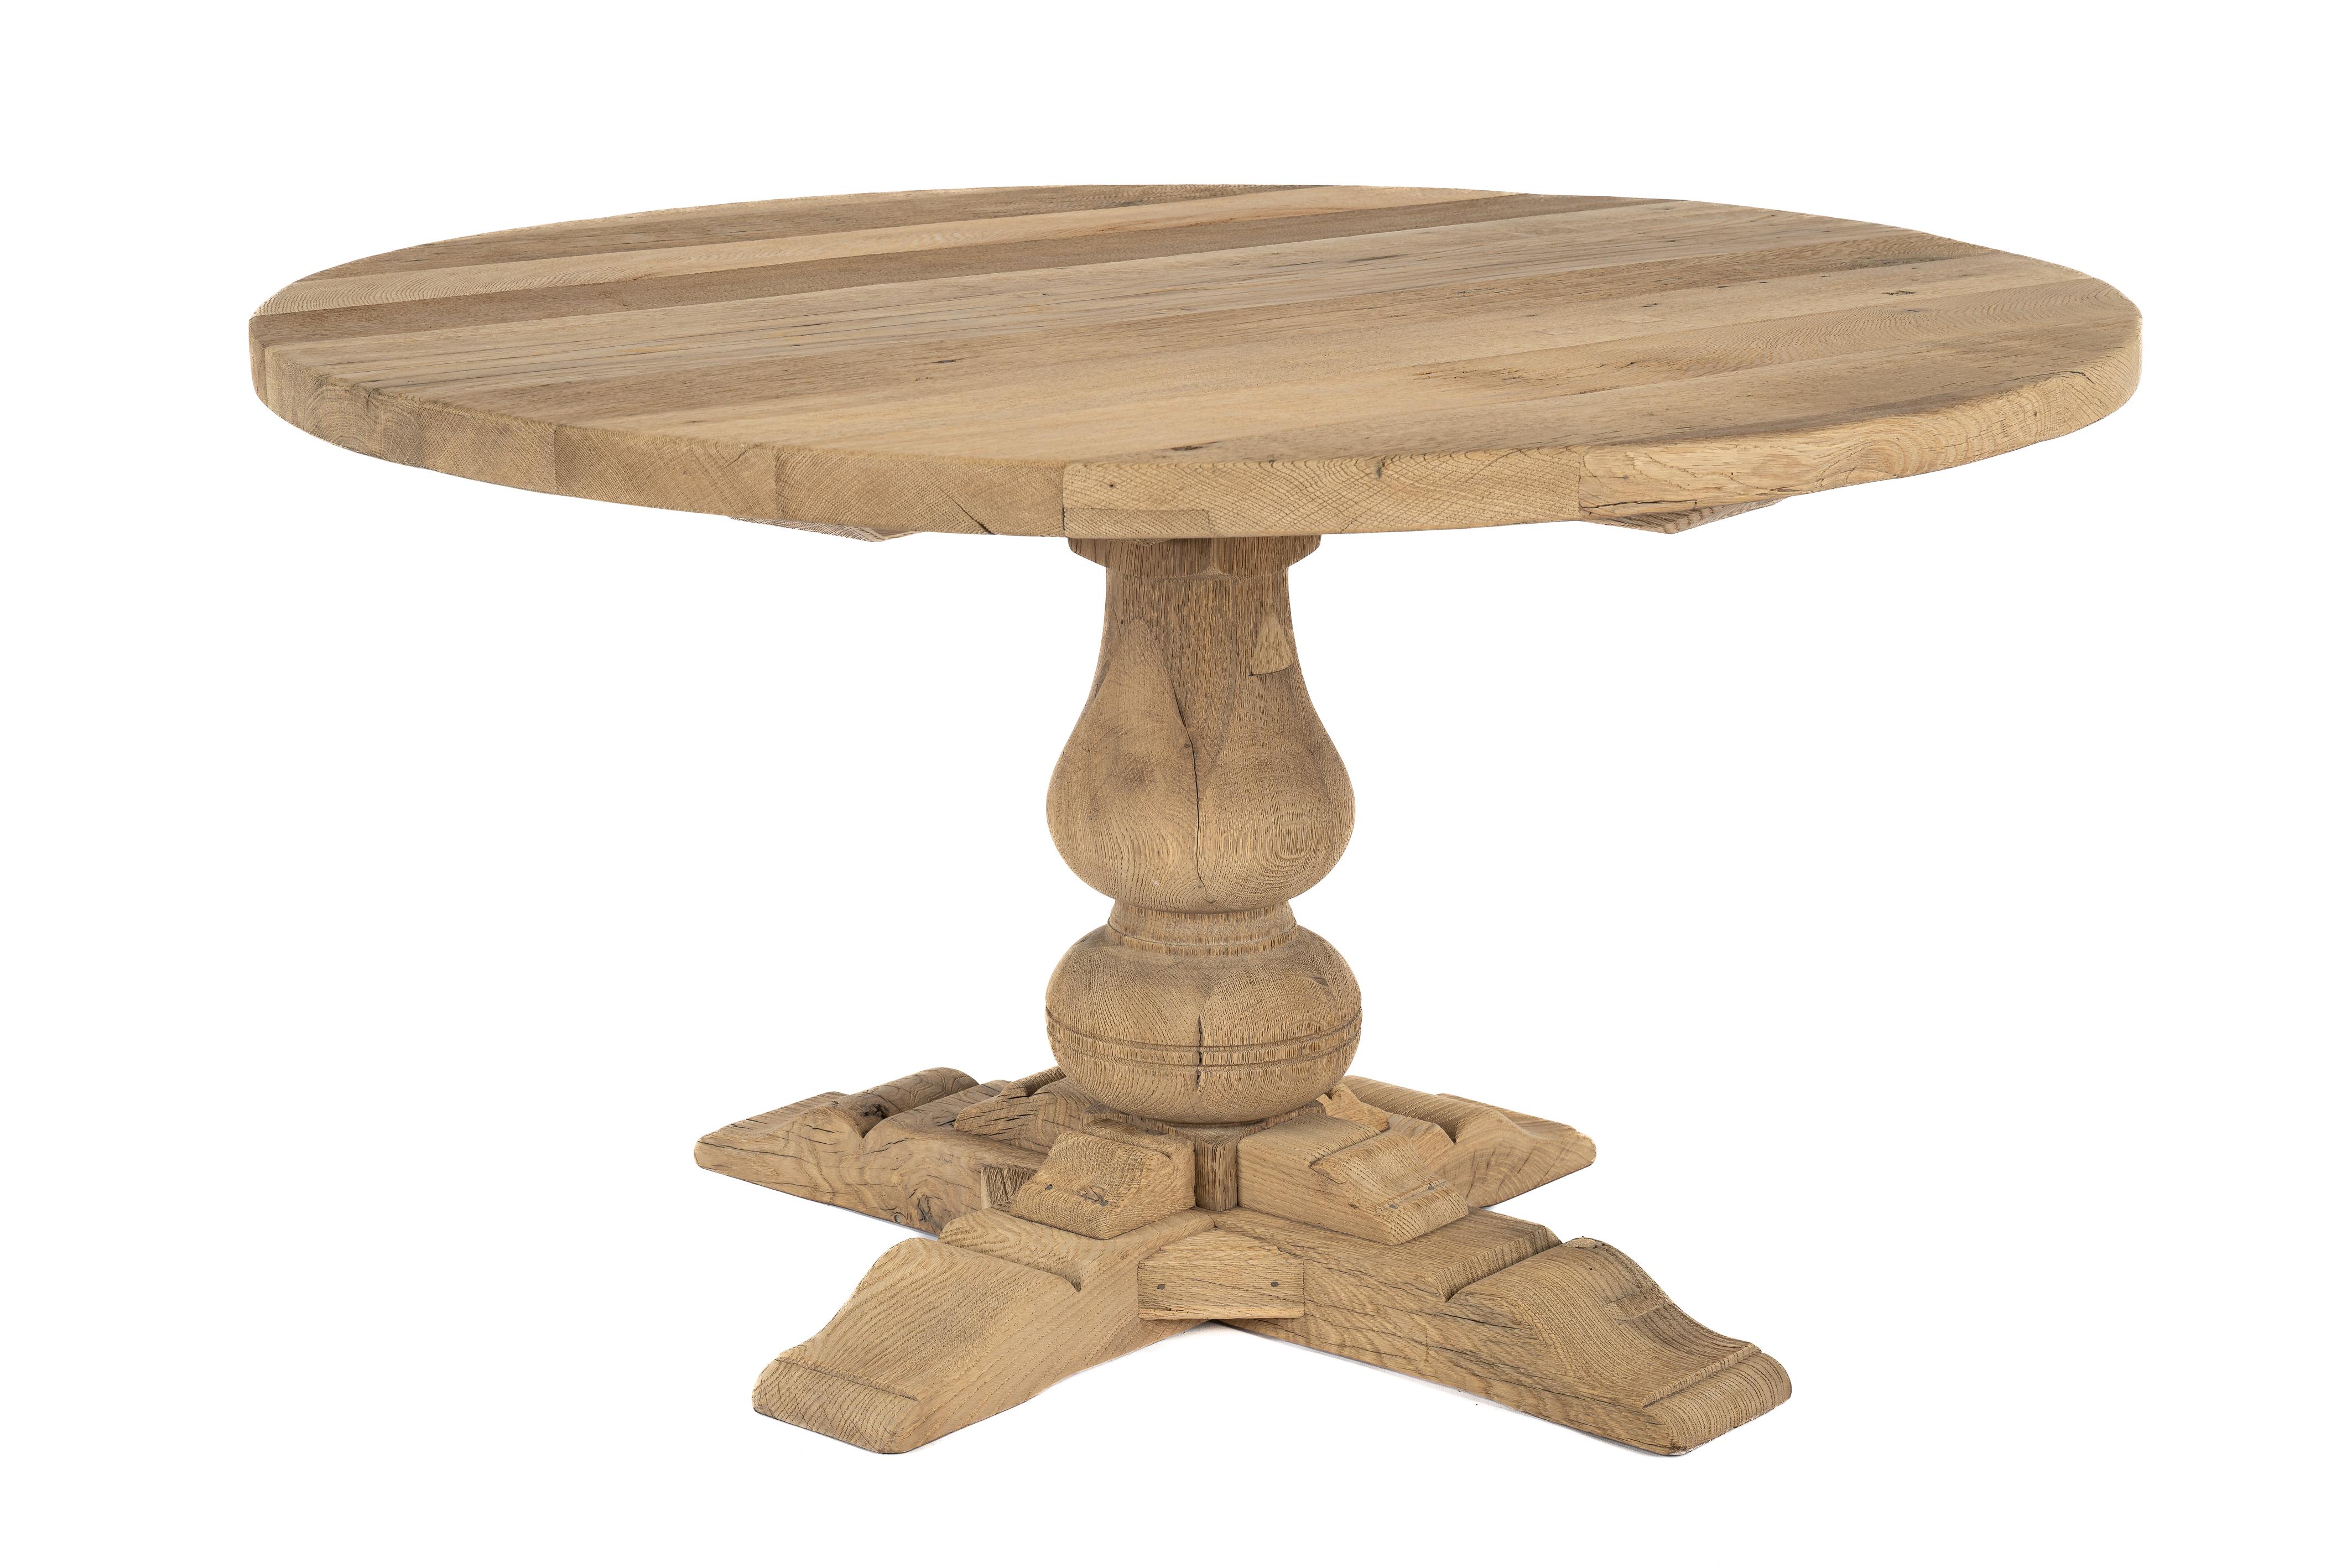 Cette table ronde a été fabriquée à partir de bois de chêne récupéré à la fin des années 1960. Le bois de chêne provient de vieilles maisons à colombages en Allemagne, où il a été exposé aux saisons pendant des siècles. Cette exposition a donné au